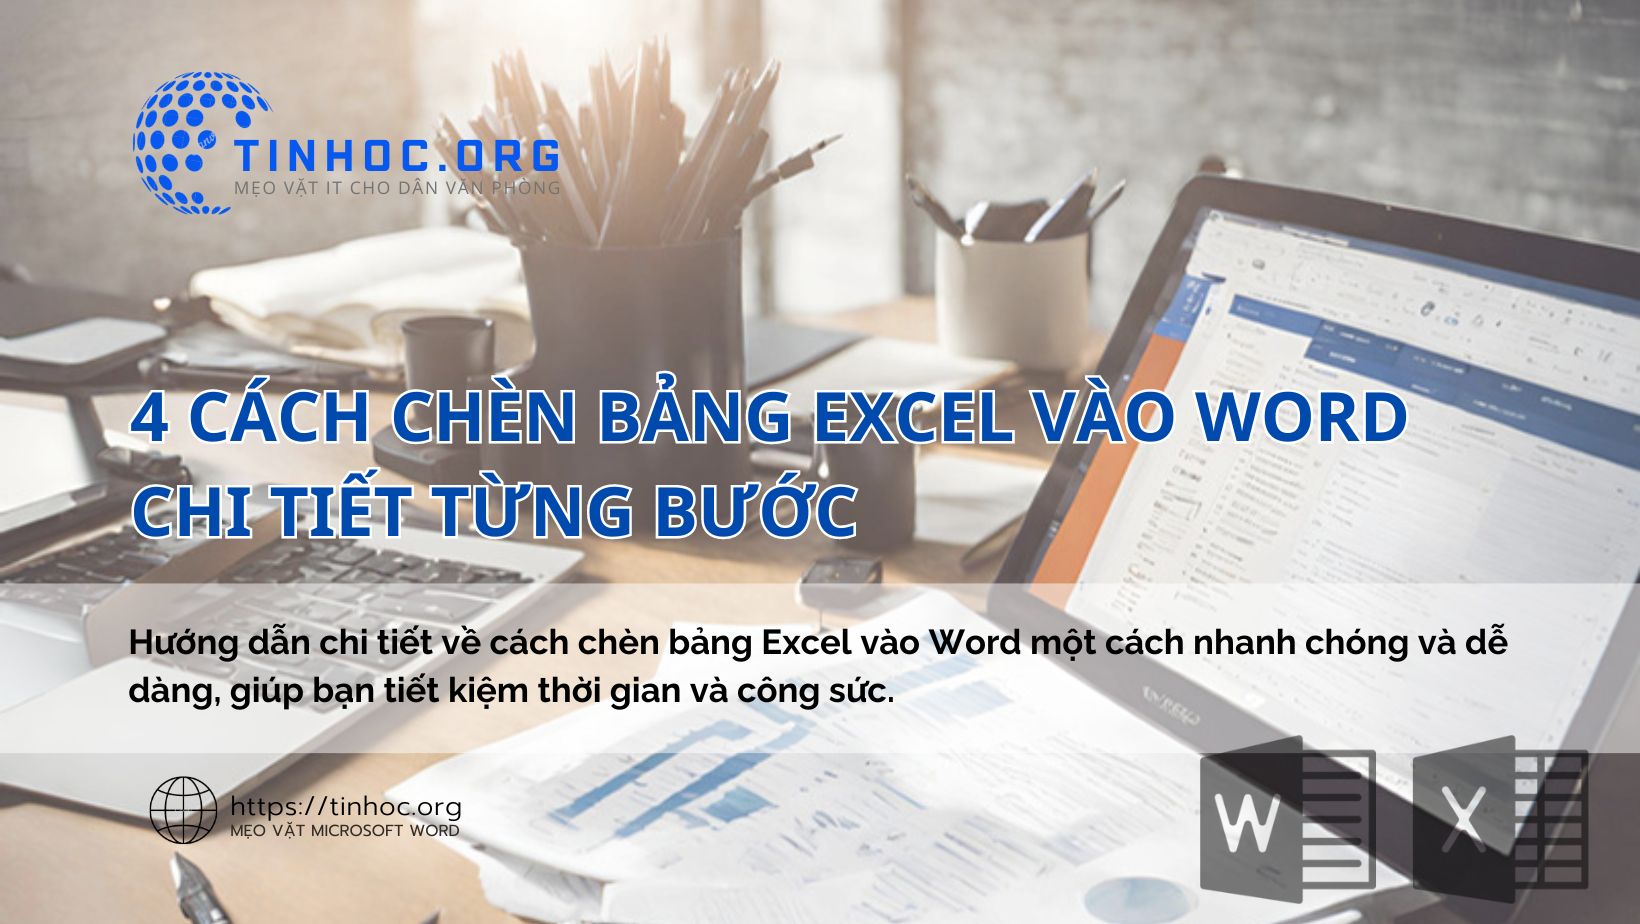 Hướng dẫn chi tiết về cách chèn bảng Excel vào Word một cách nhanh chóng và dễ dàng, giúp bạn tiết kiệm thời gian và công sức.